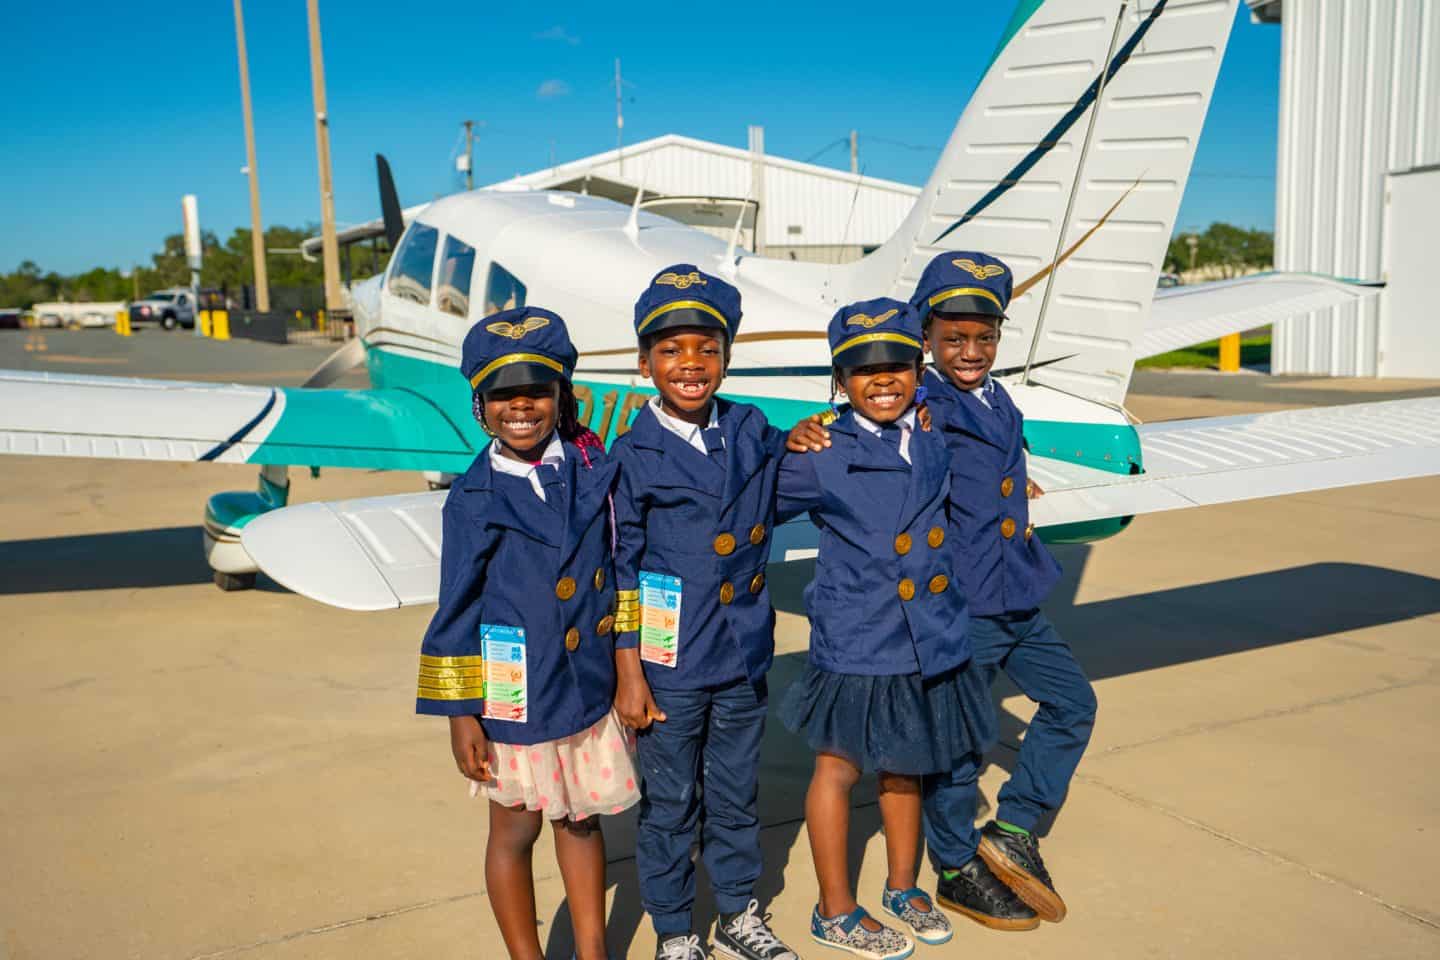 Black Kids Travel - Black Family Travel - Black Travel - Black Pilot - Kid Pilot